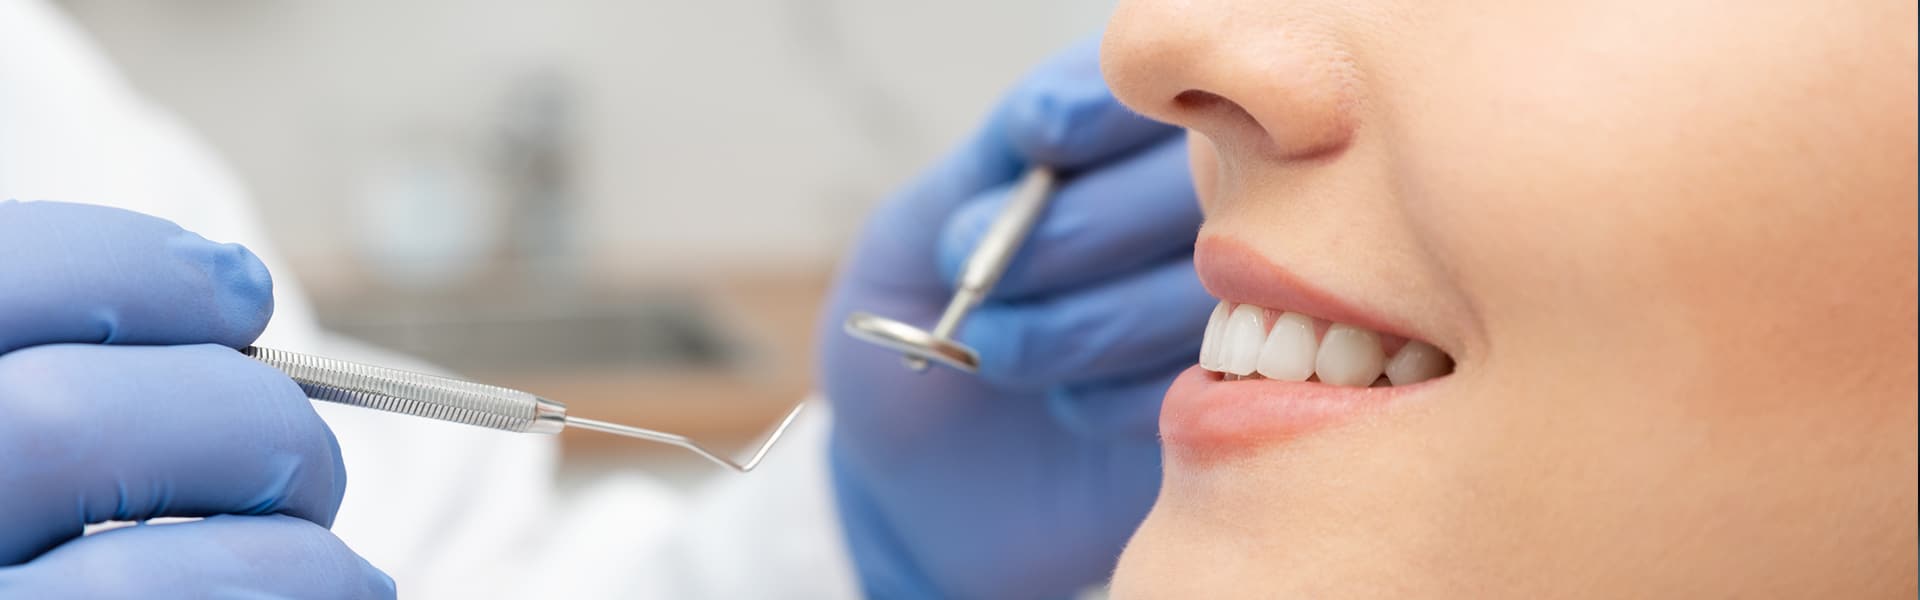 Odontoiatria conservativa: un dente sano e curato